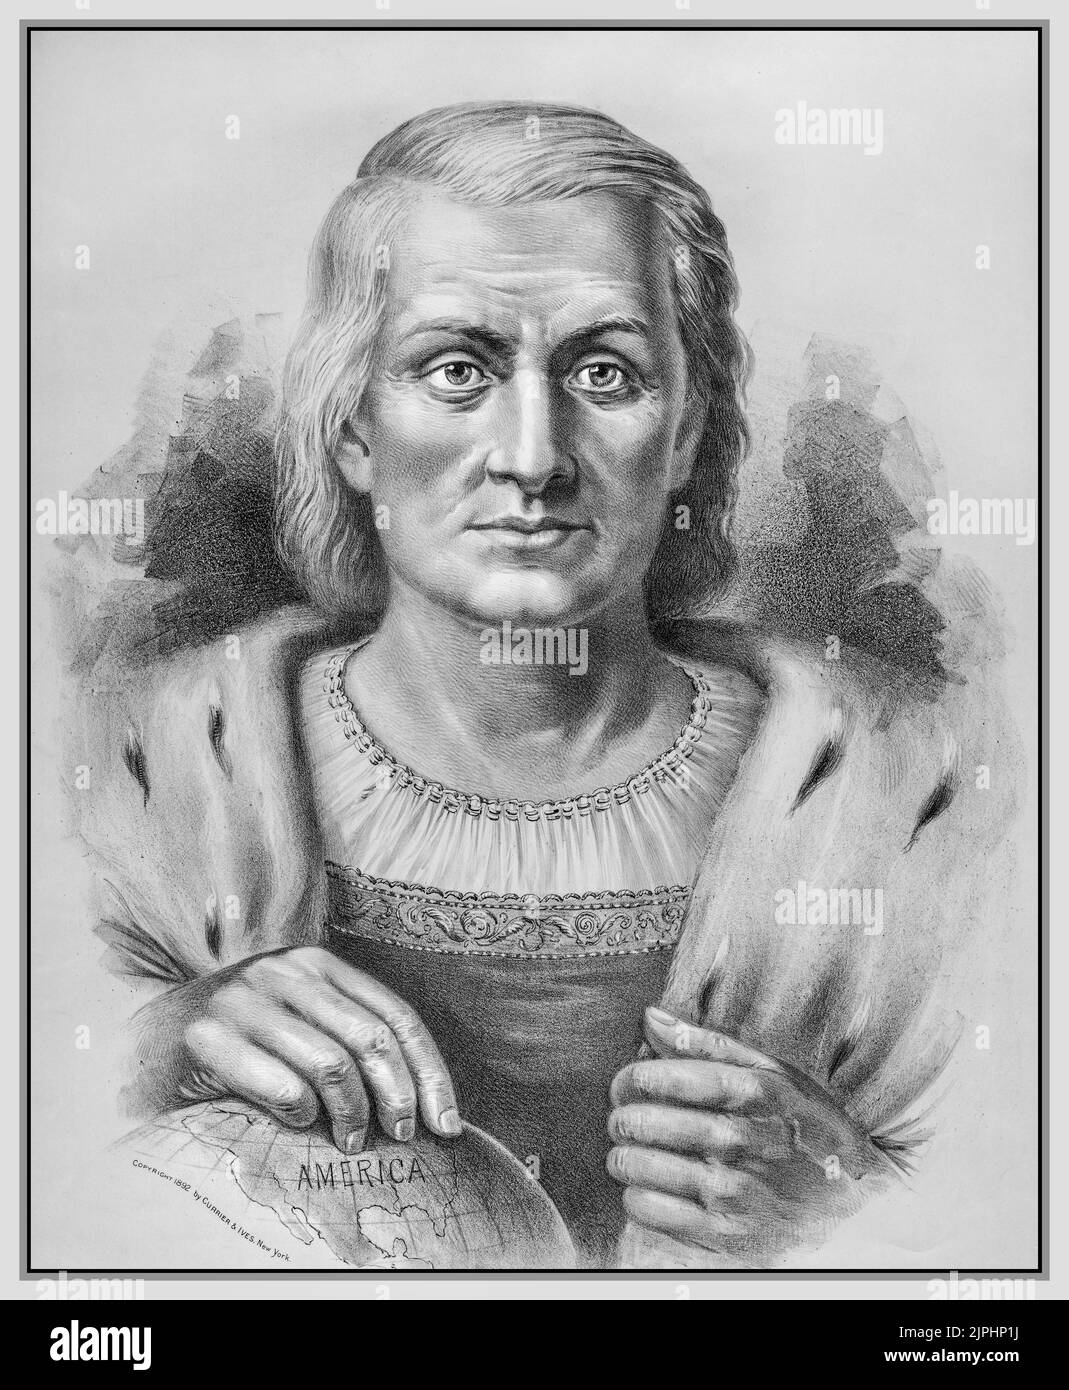 Christopher Columbus Vintage Portrait Discoverer of America 1492. 1890s Lithographie von Currier & Ives, nach einem Gemälde von Emilie Chaese. Stockfoto